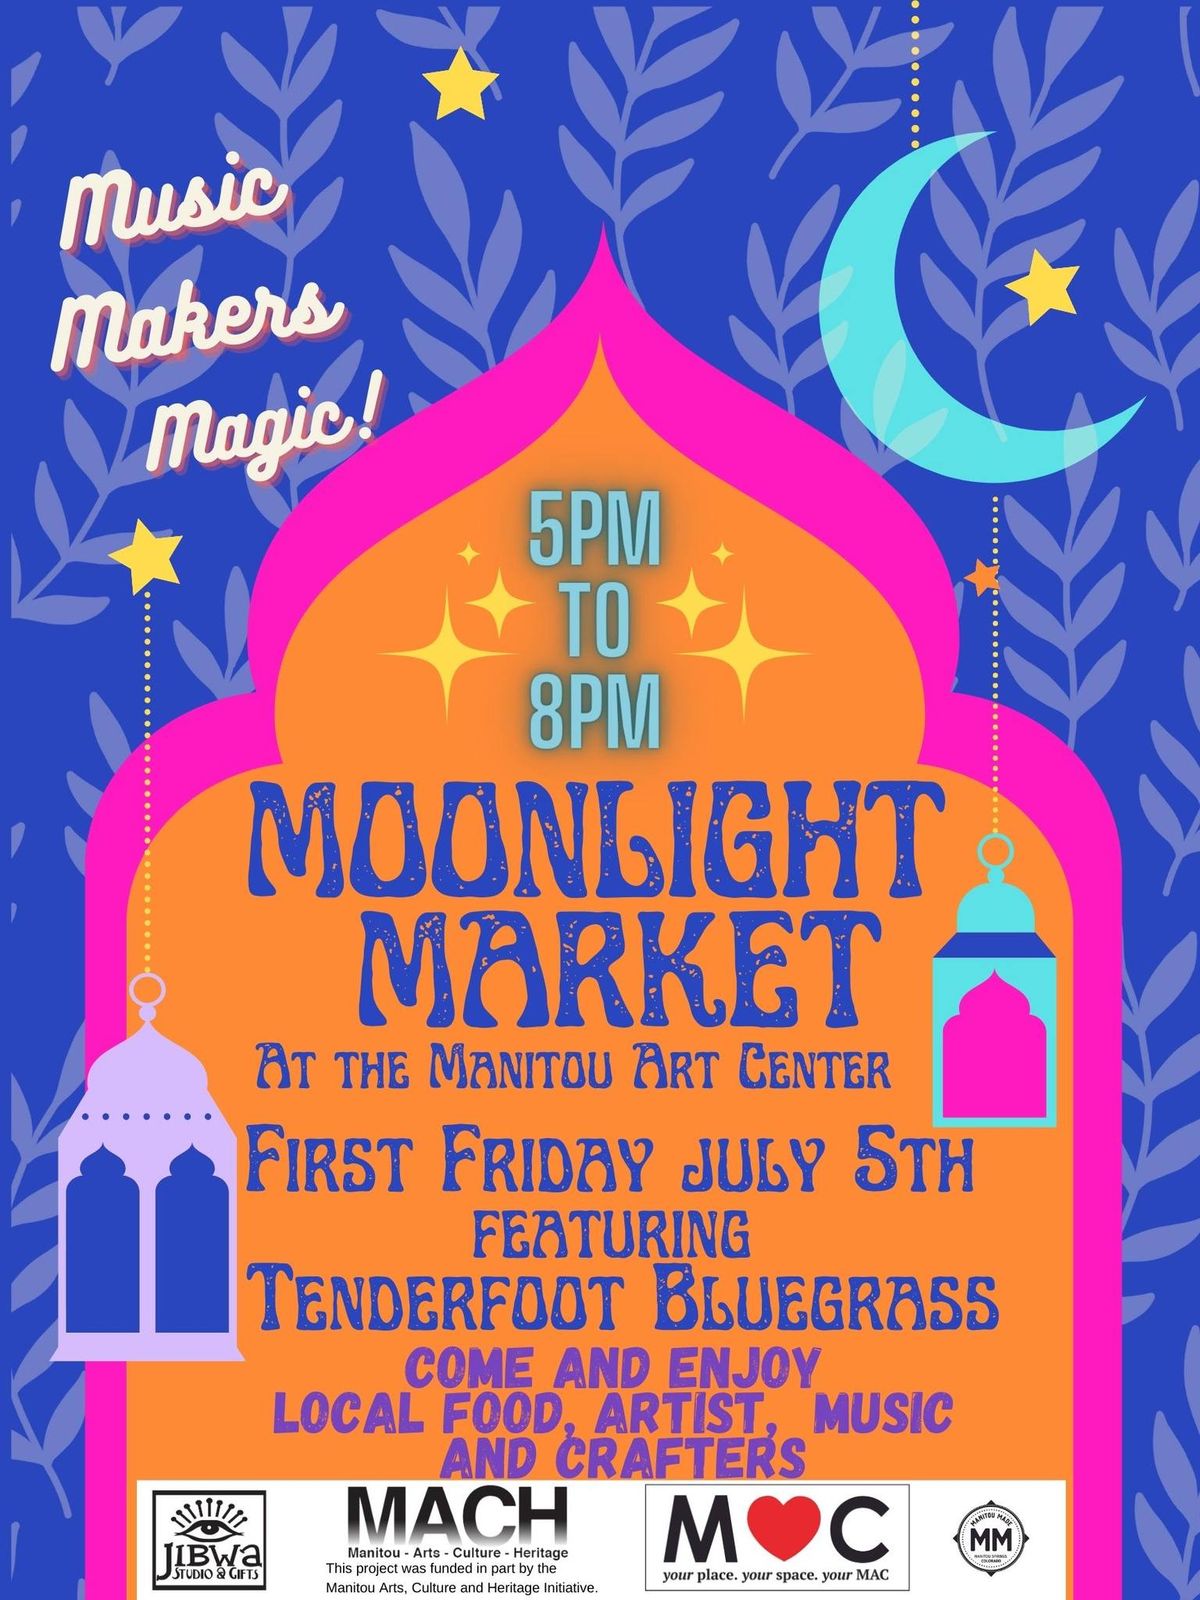 First Friday July Moonlight Market